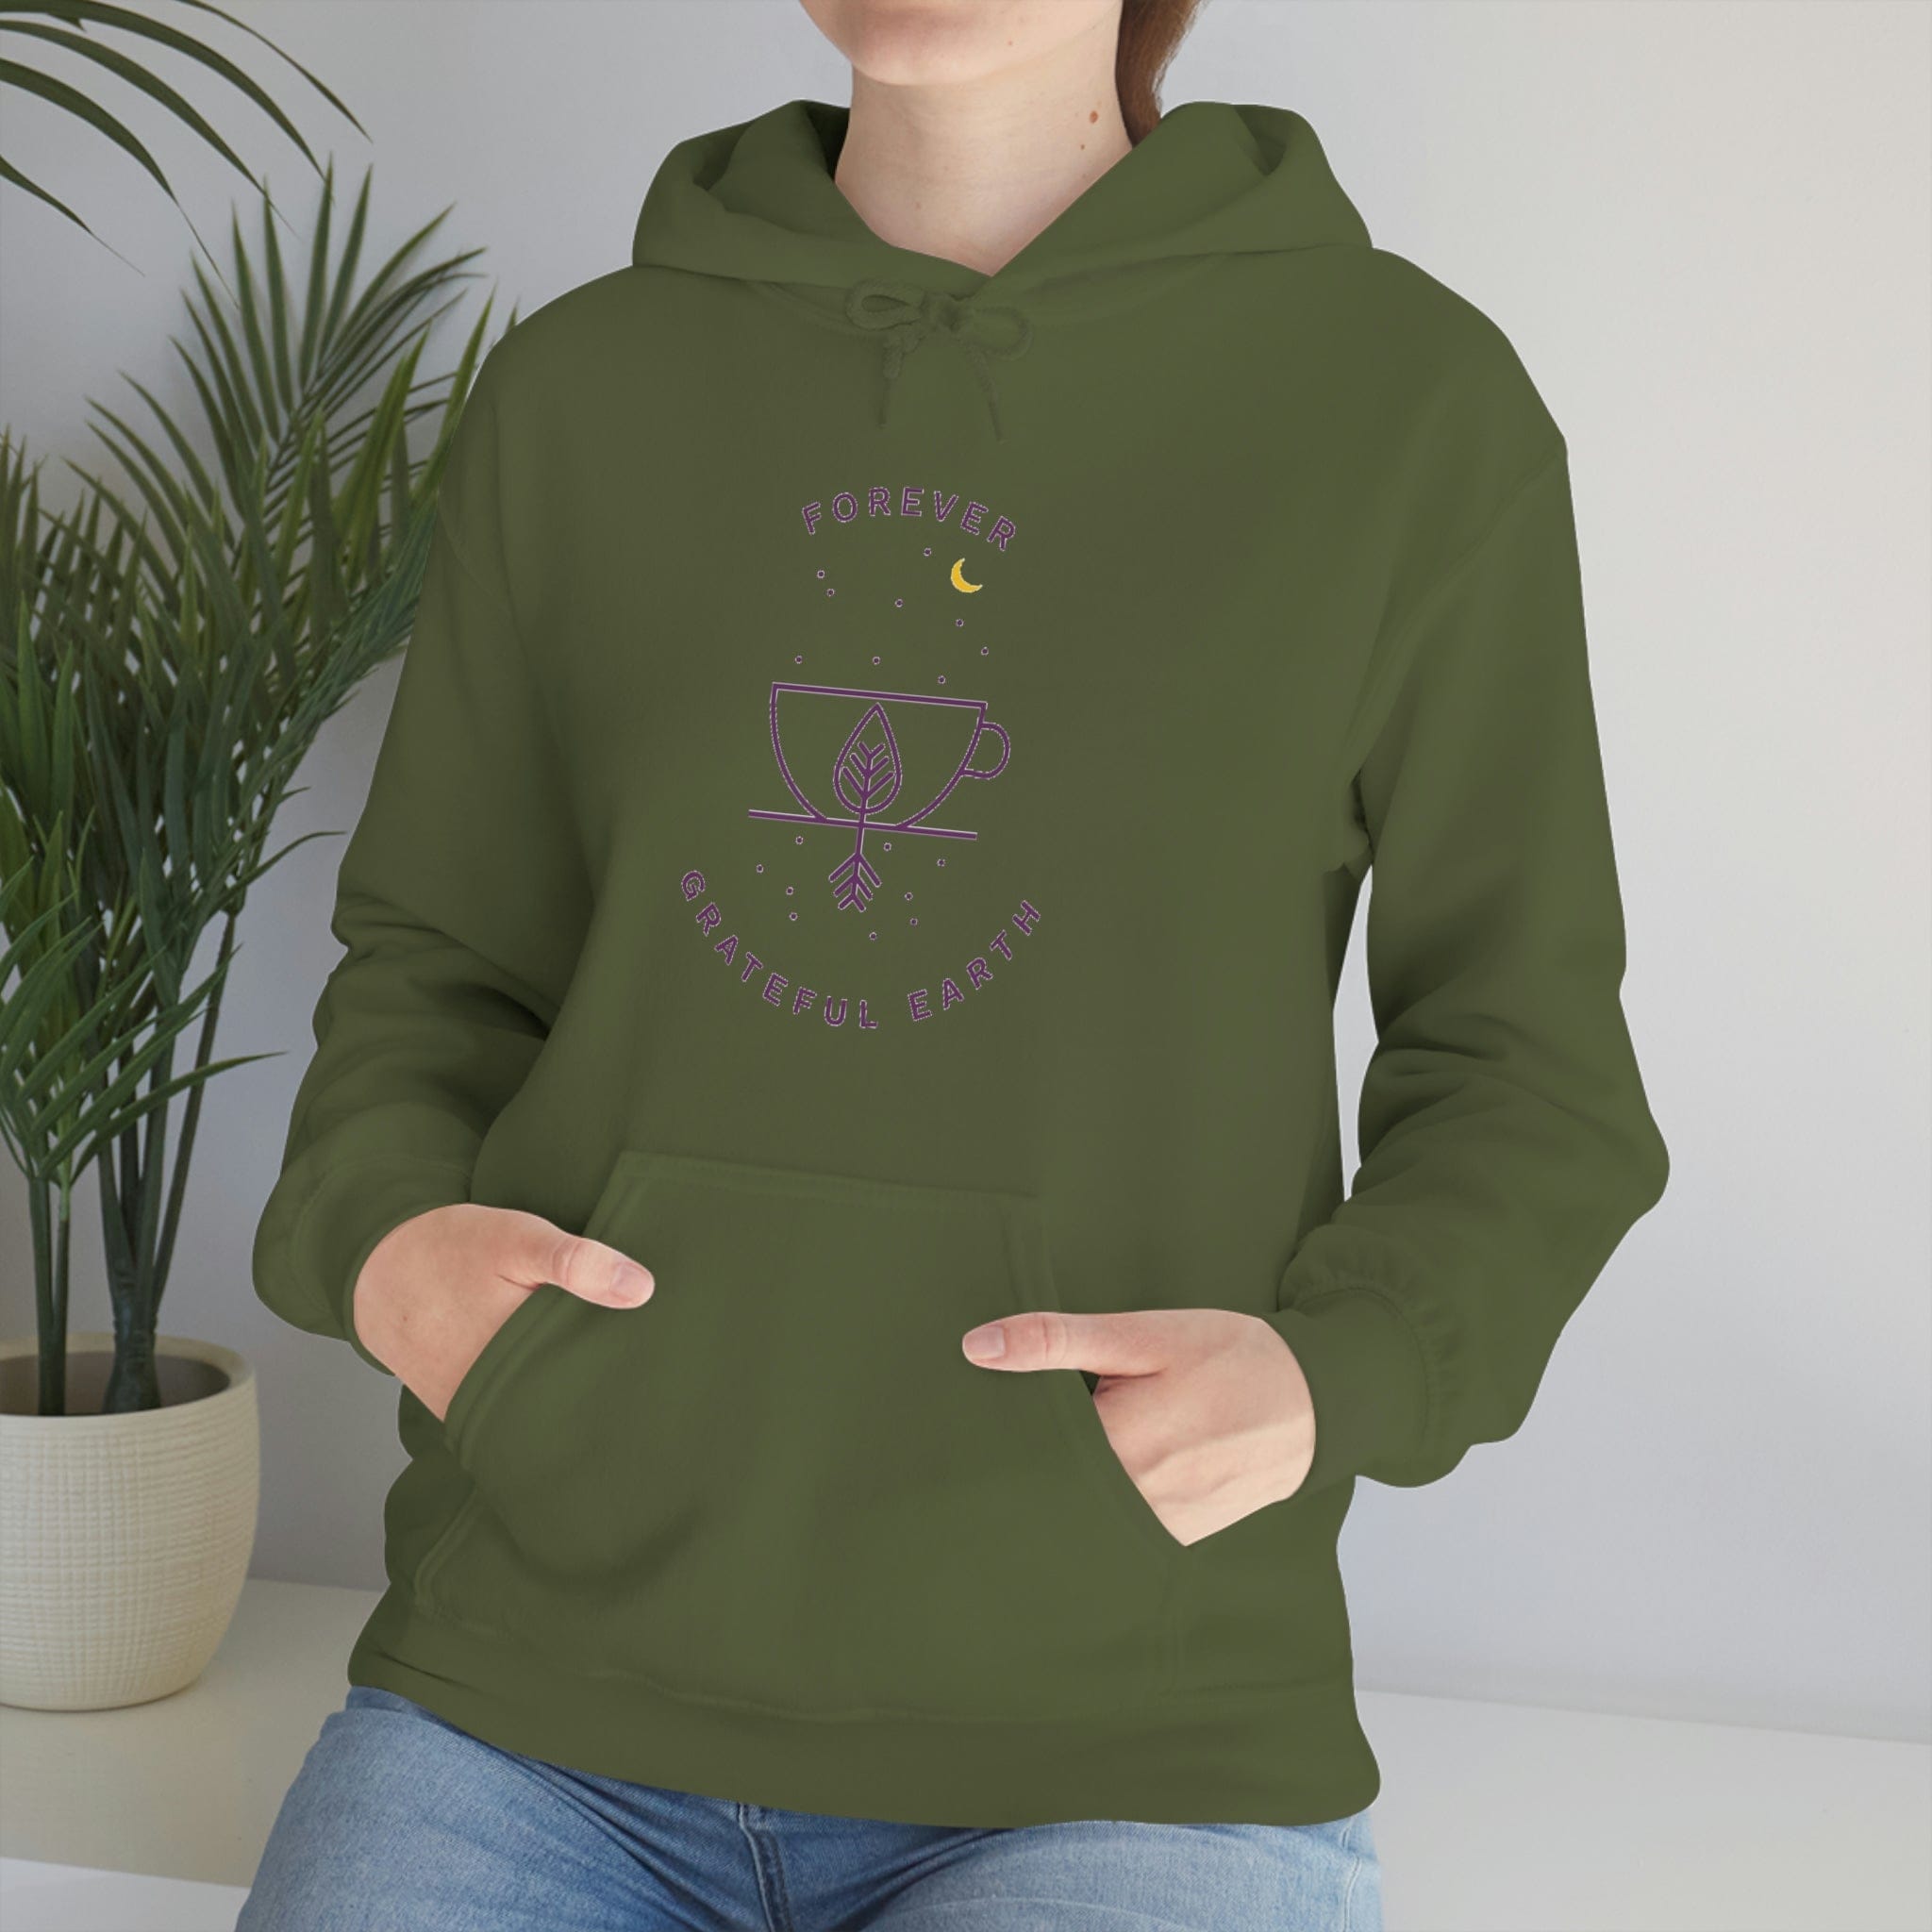 Cozy-Cutie Unisex Heavy Blend Hooded Sweatshirt